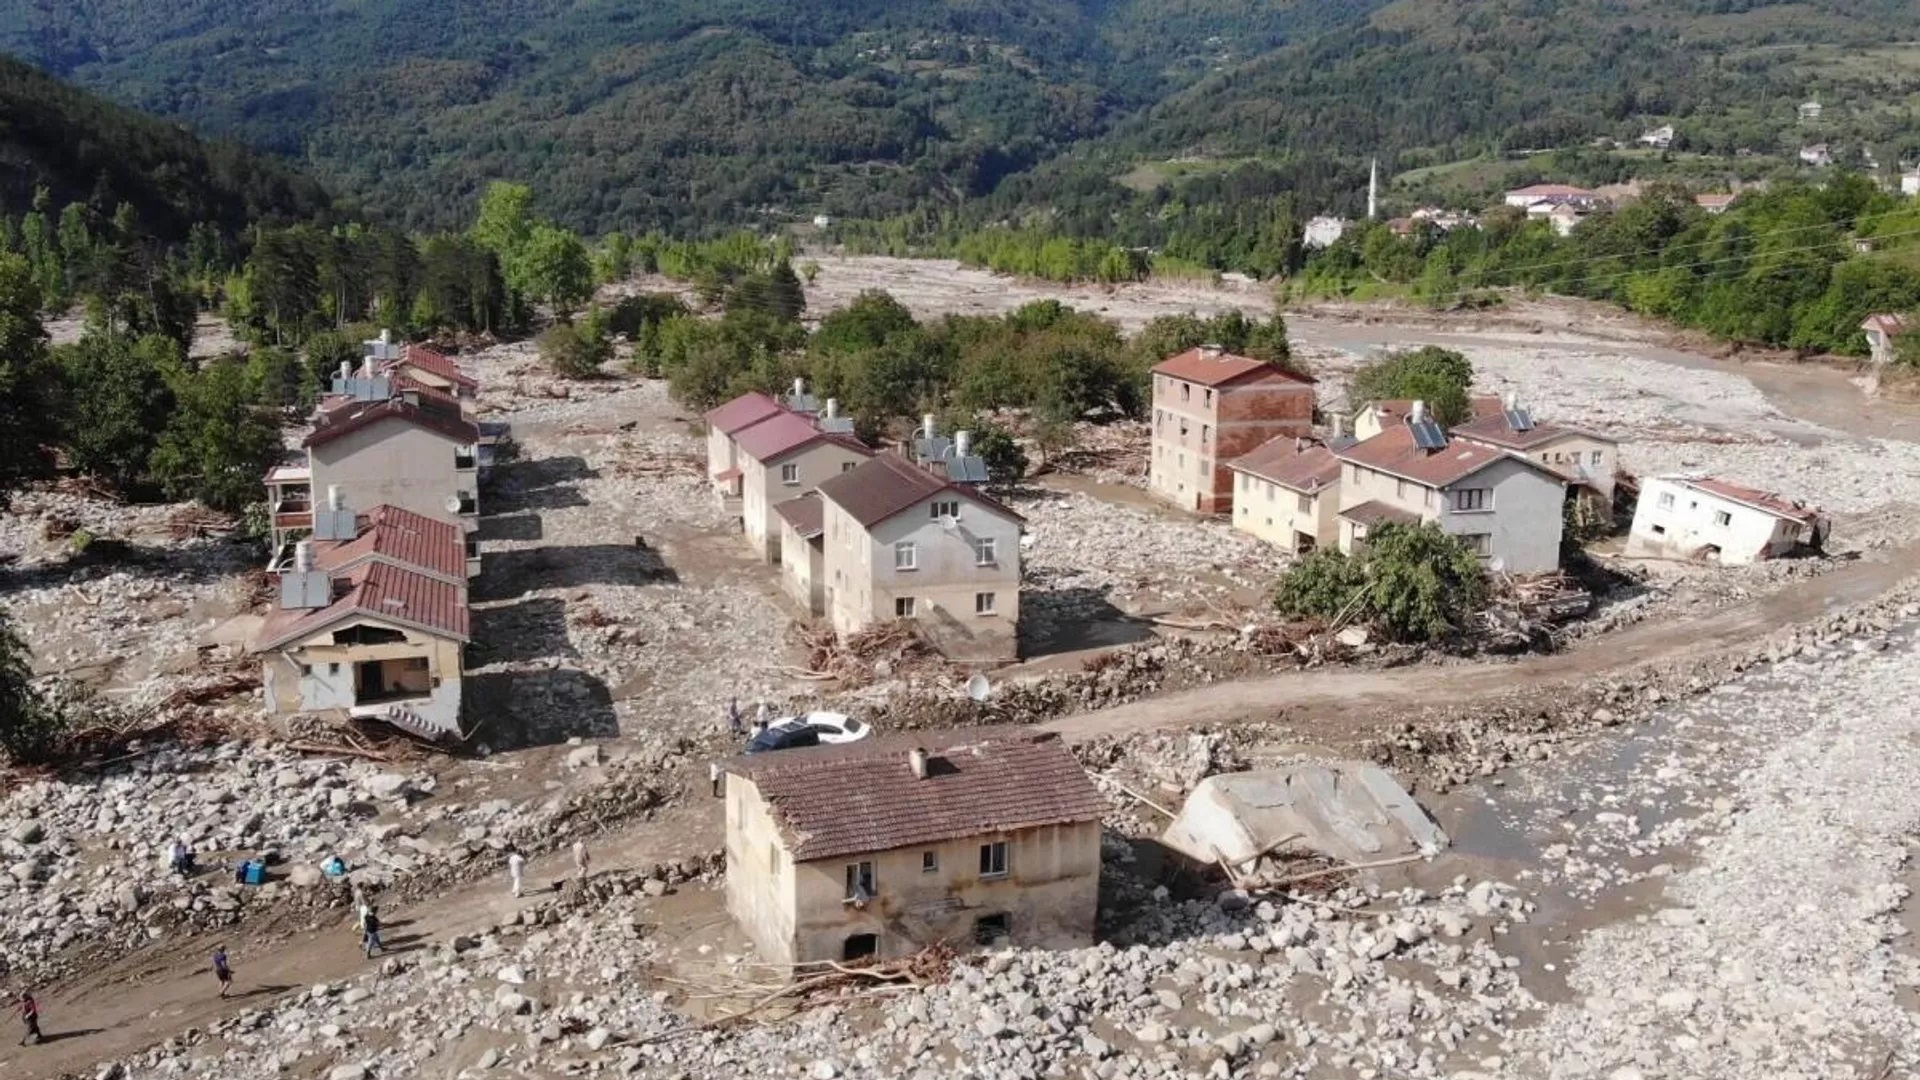 Sinop'ta Ayancık'ta bir köy, valilik kararıyla tedbir amaçlı boşaltıldı